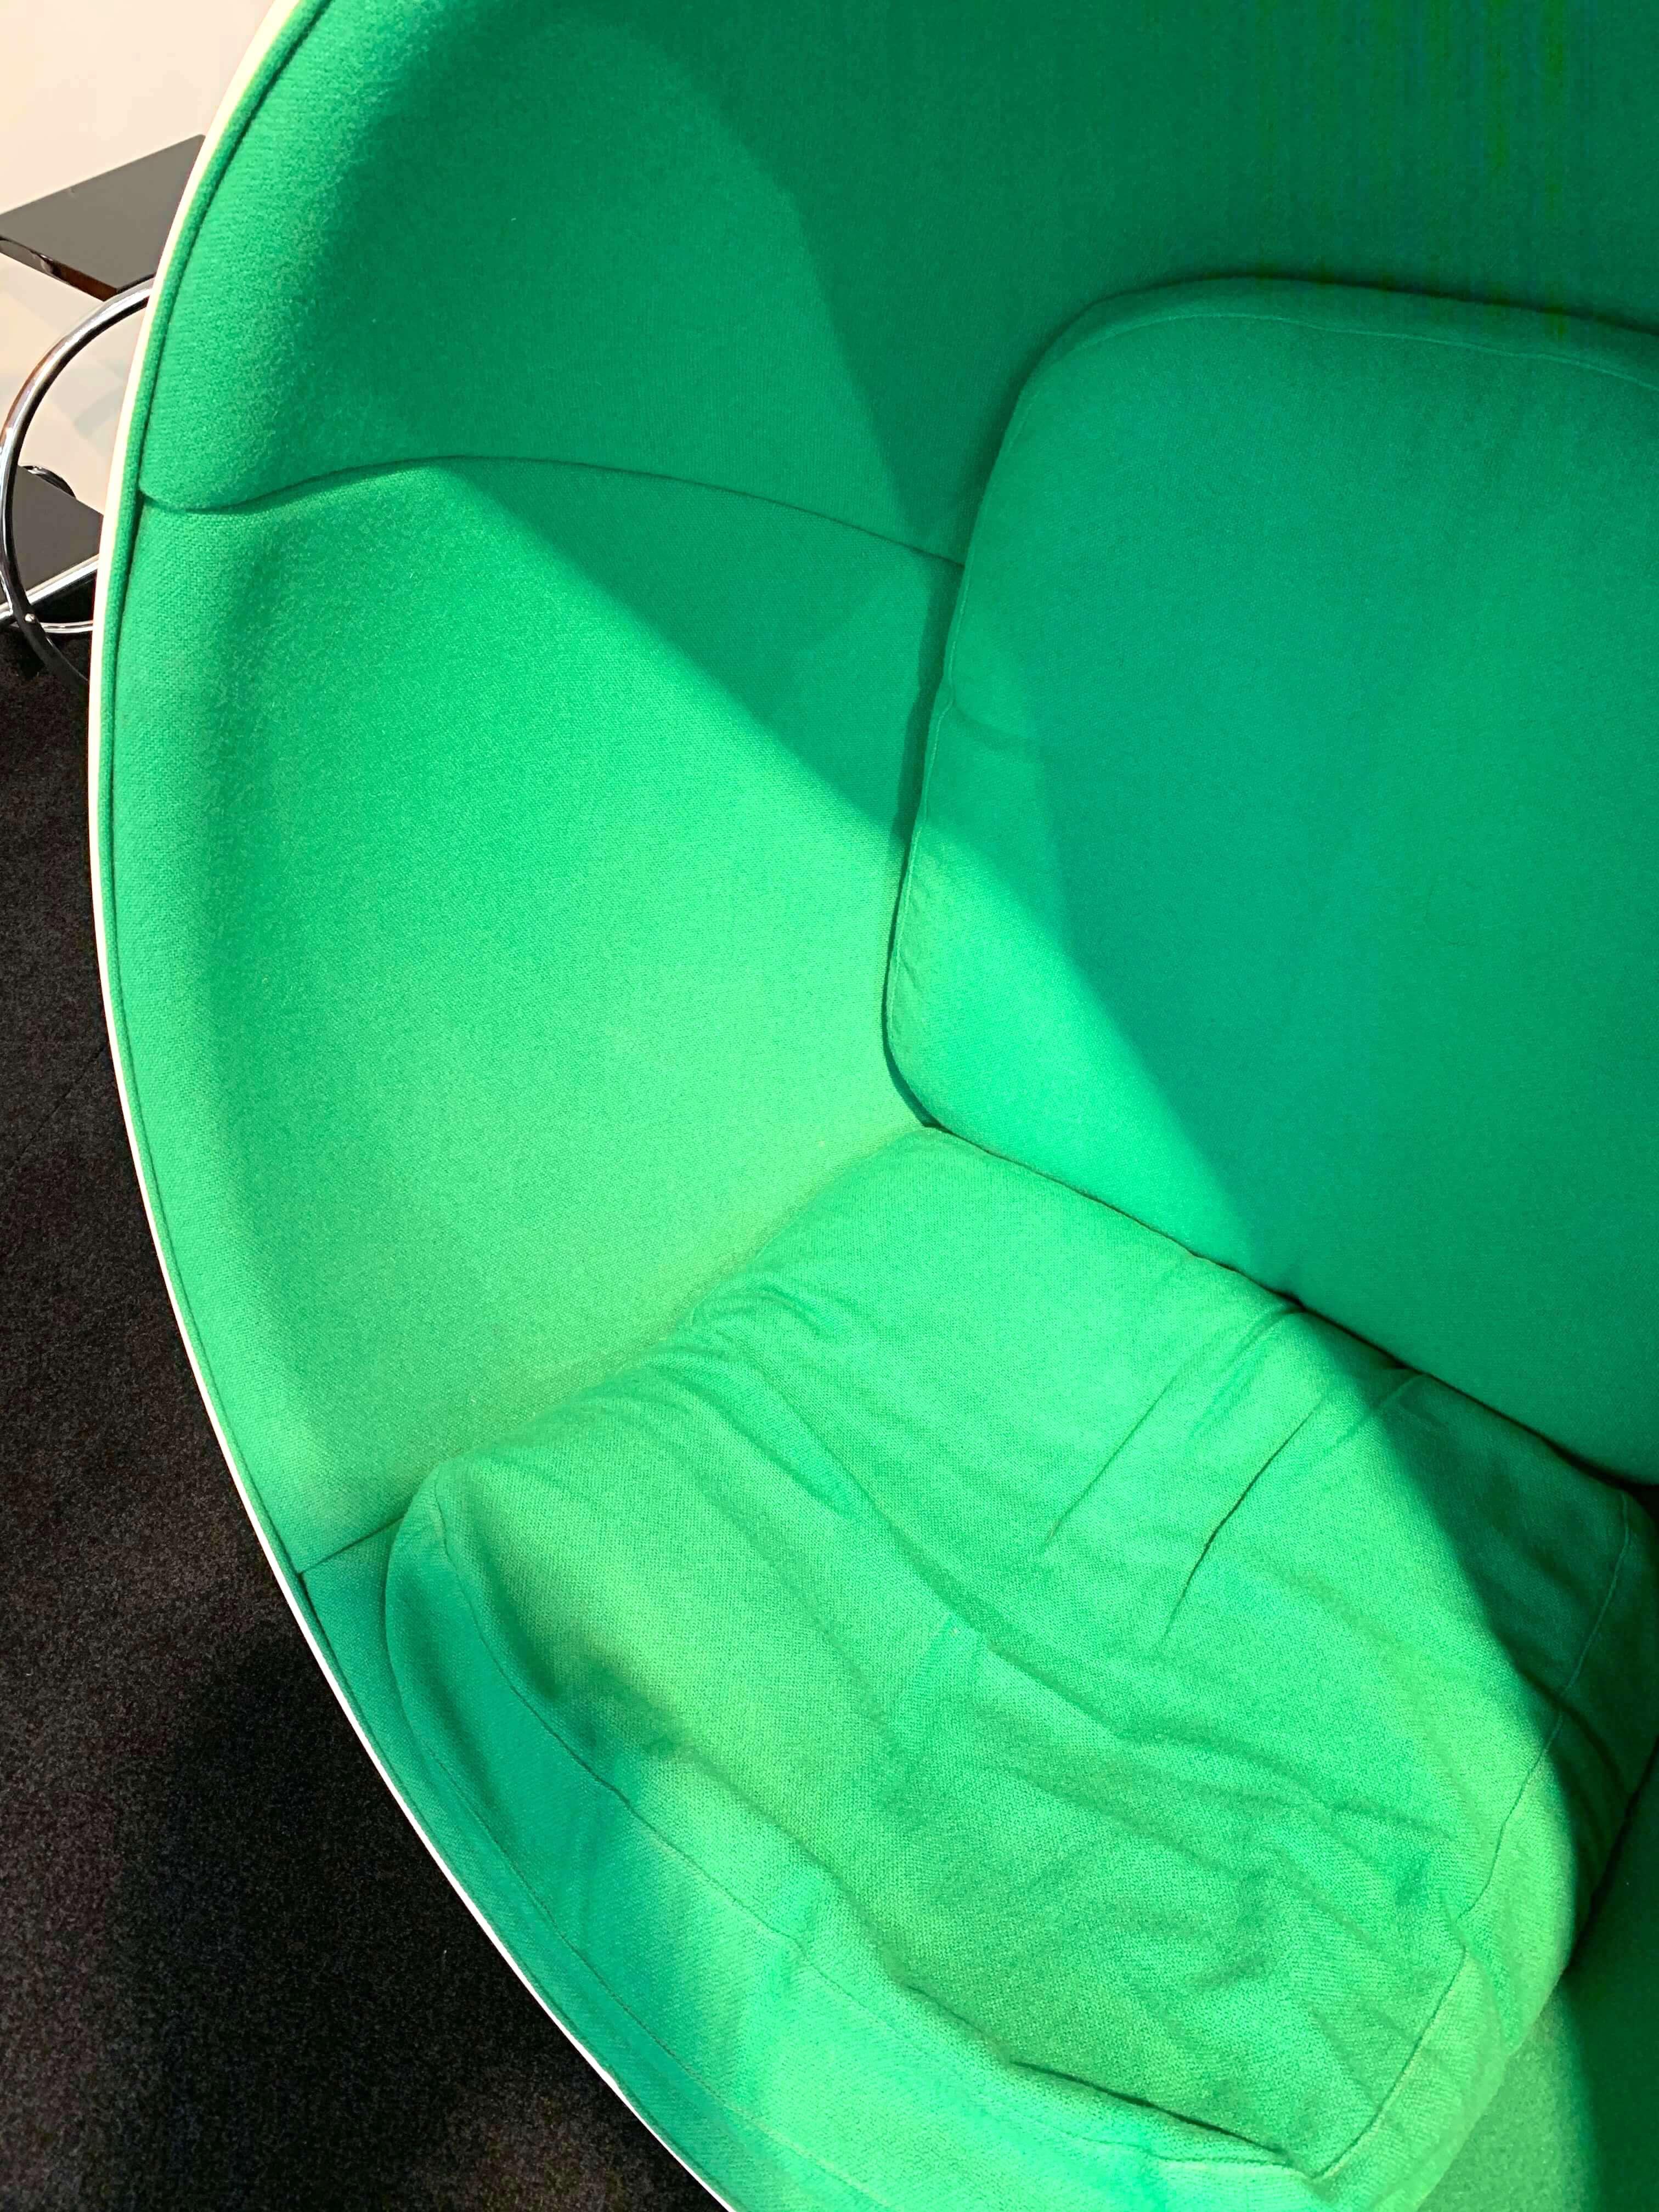 Space Age Ball Chair by Adelta:: Eero Aarino:: Grün und Weiß:: Finnland (Lackiert)